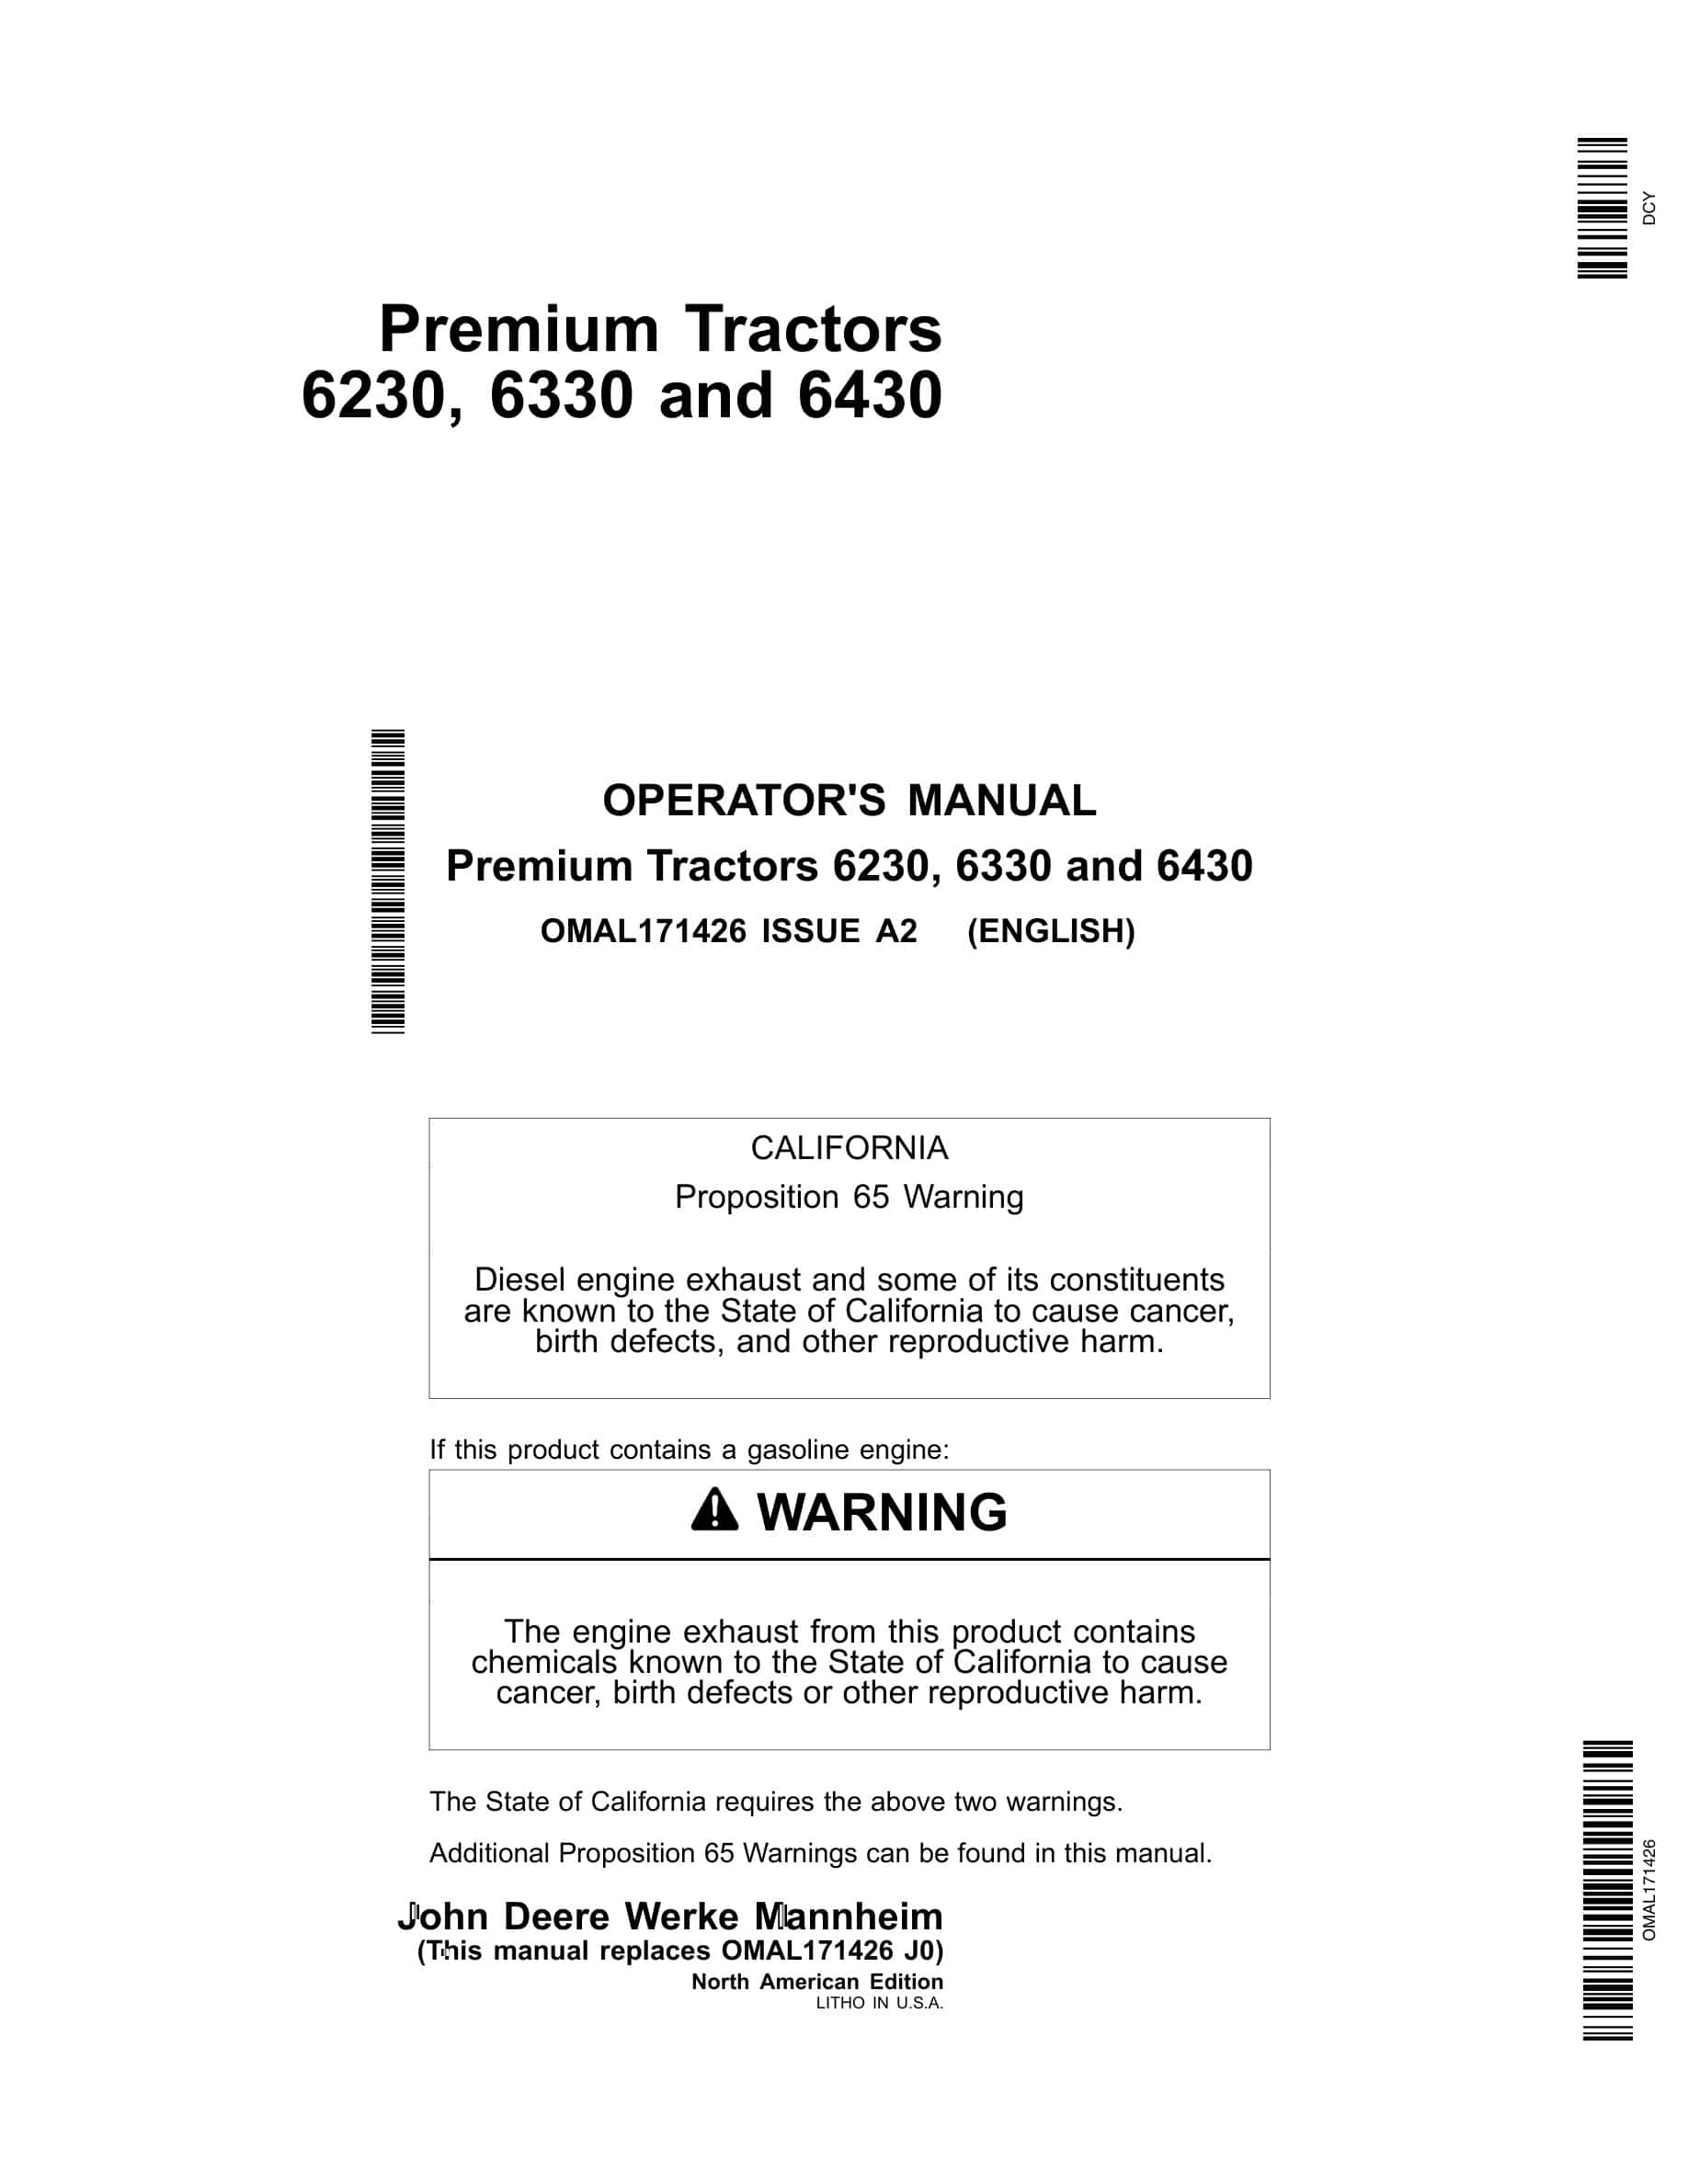 John Deere 6230, 6330 and 6430 Tractor Operator Manual OMAL171426-1